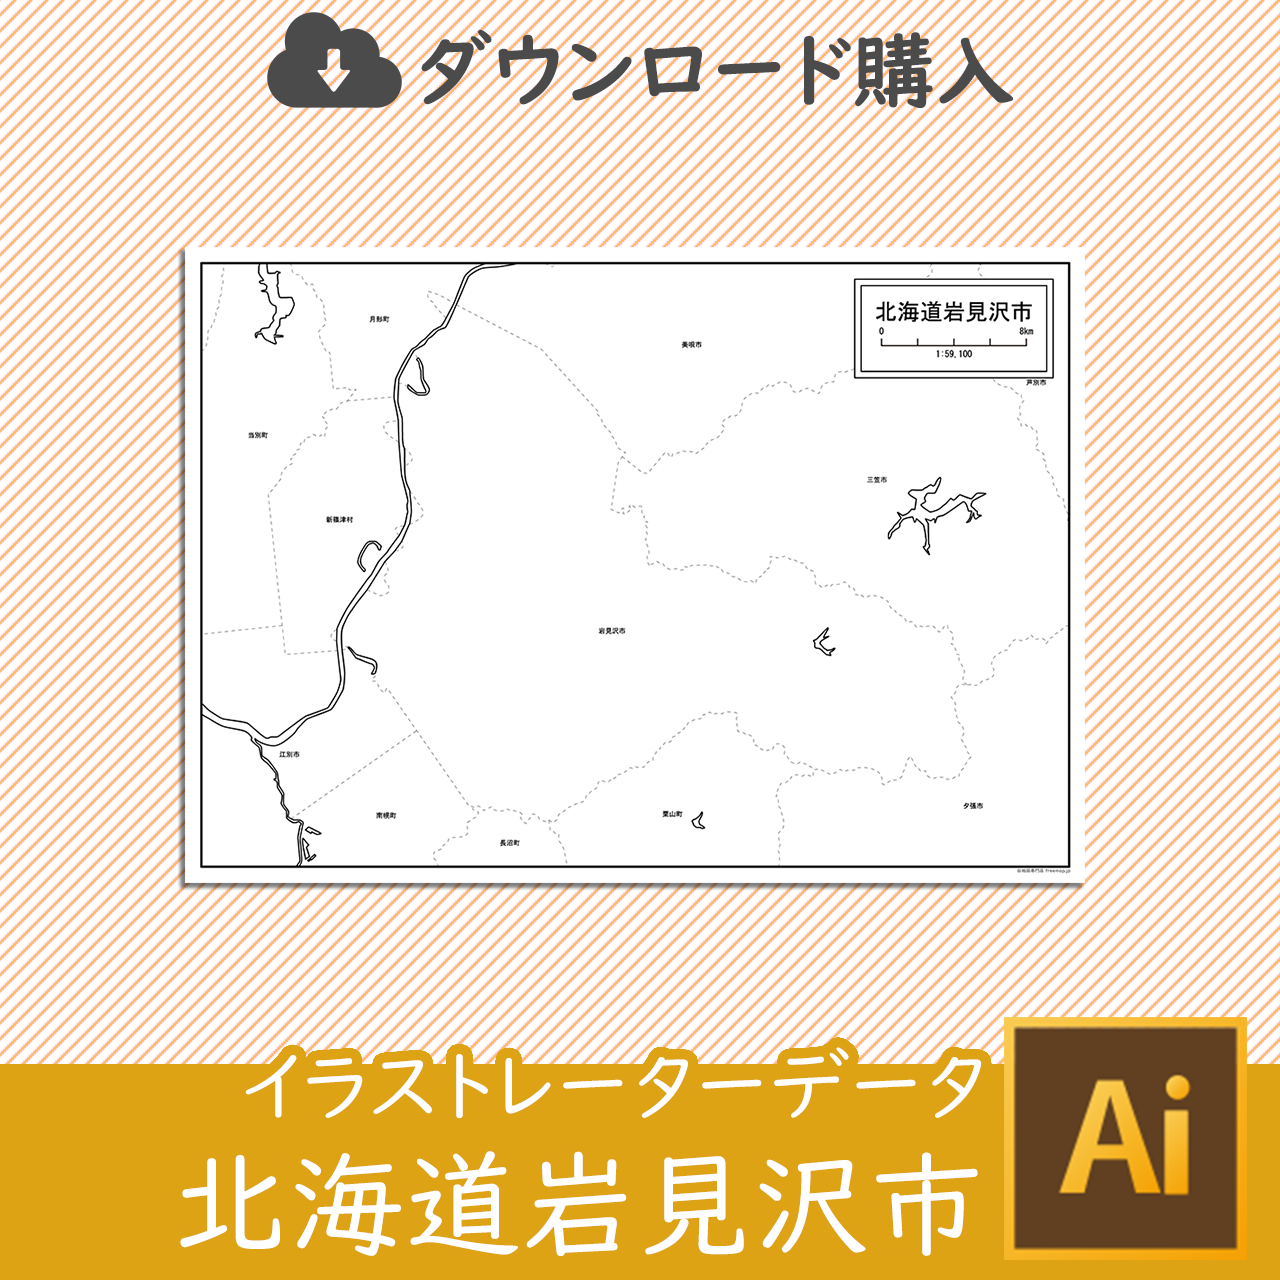 岩見沢市のaiデータのサムネイル画像